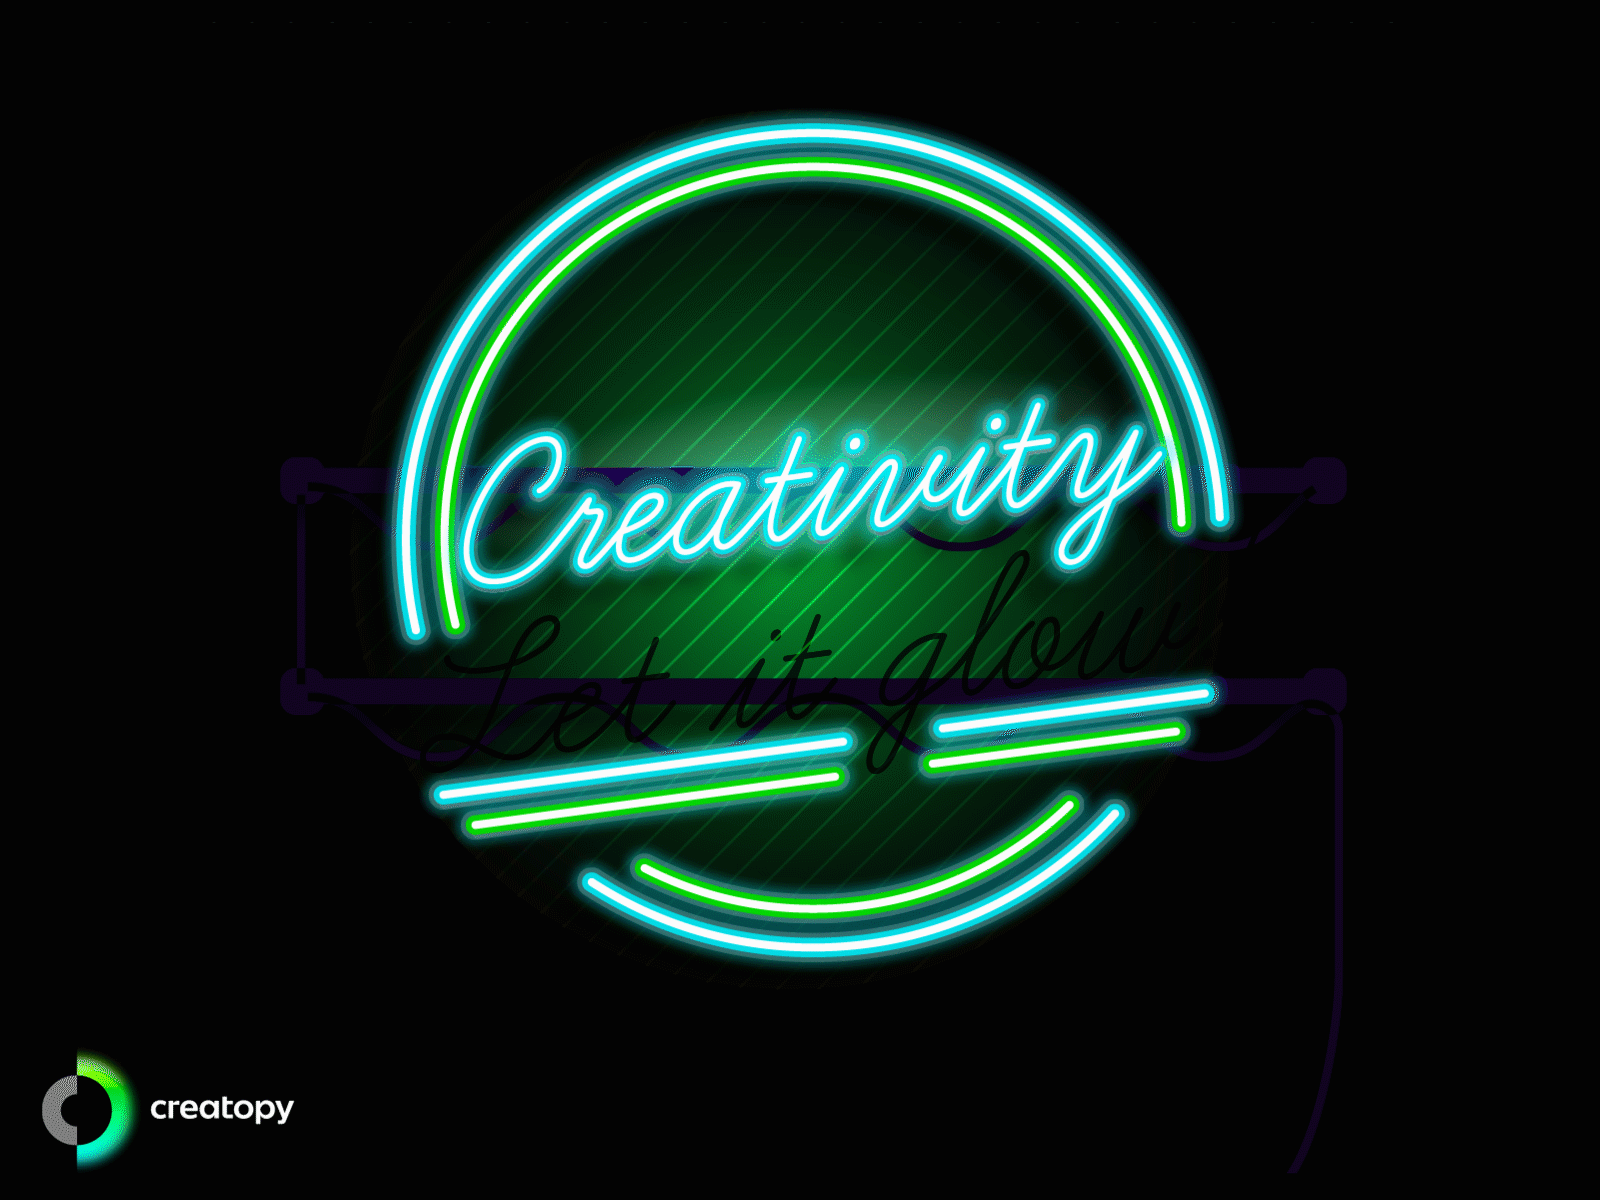 Creativity. Let it glow!